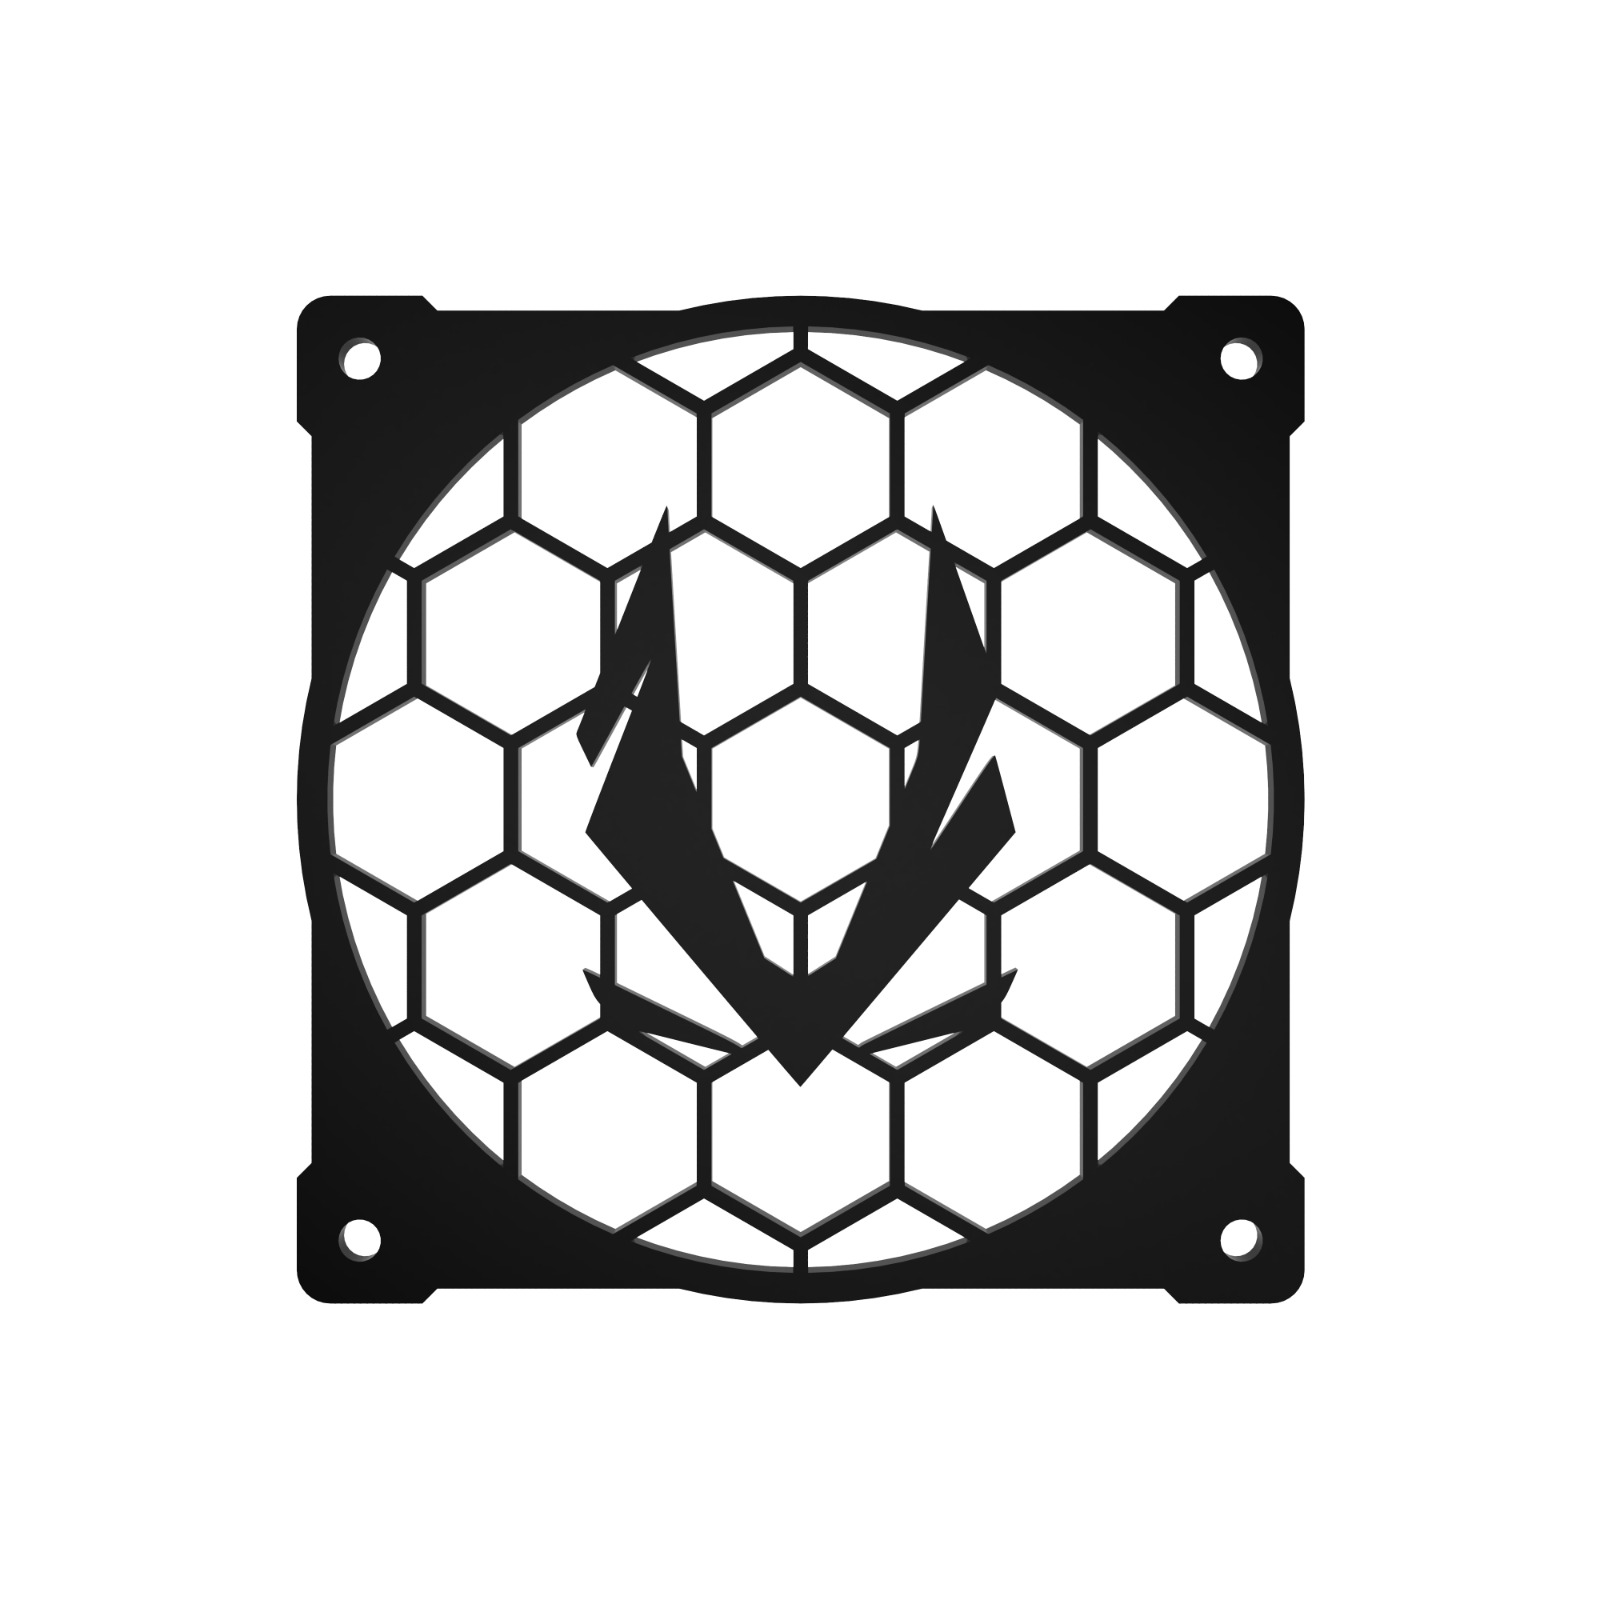 120mm Case Fan Cover - Unique Hexagon Zotac Logo Design Great for RGB aRGB Fans